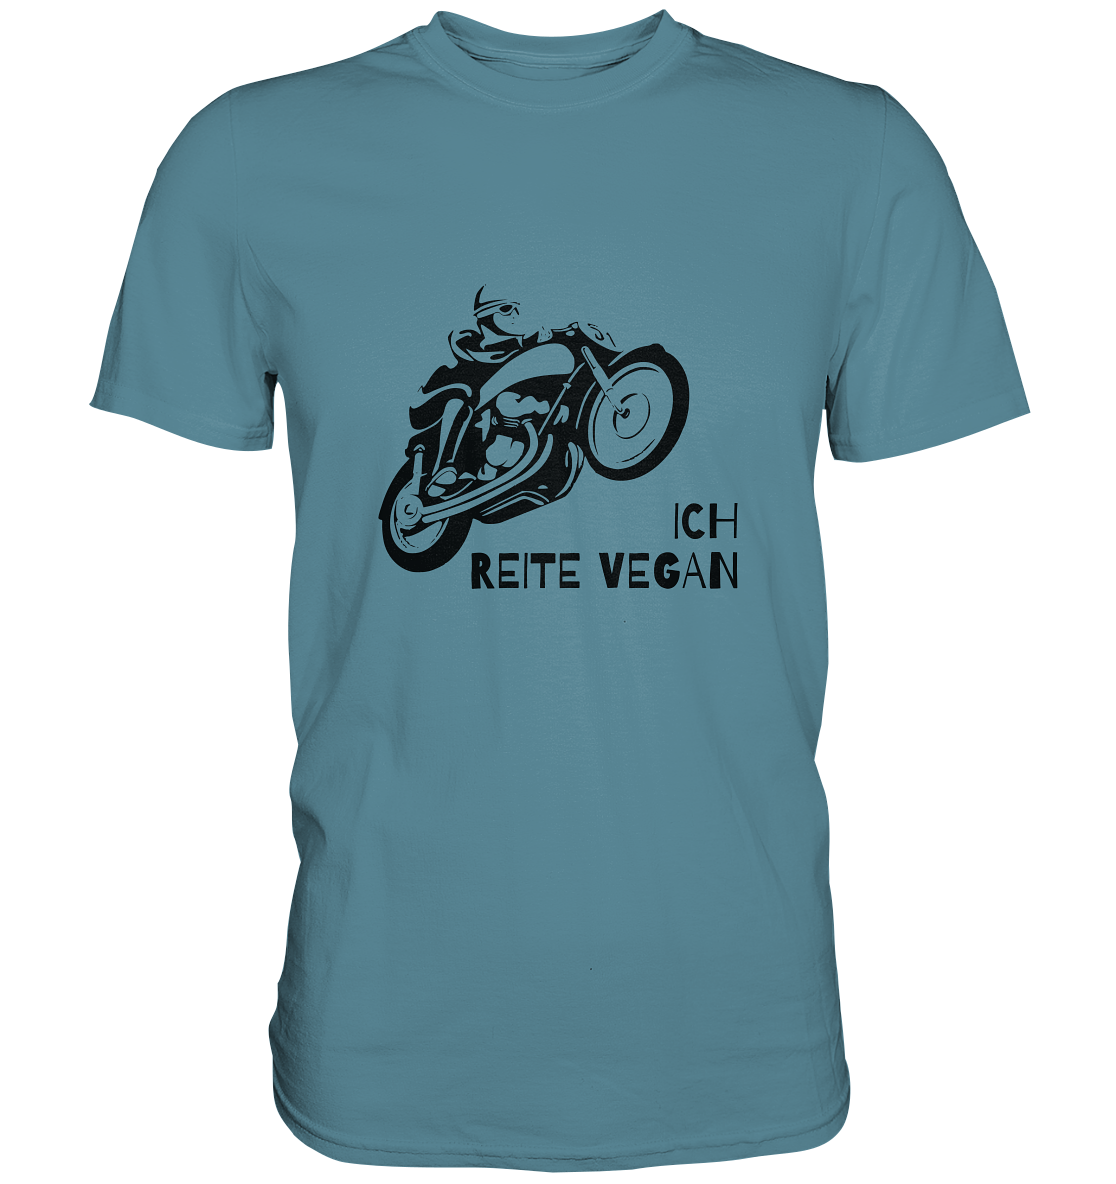 T-Shirt, Herren, Rundhals, mit Aufdruck Motorrad und Spruch "Ich reite vegan", blau hell